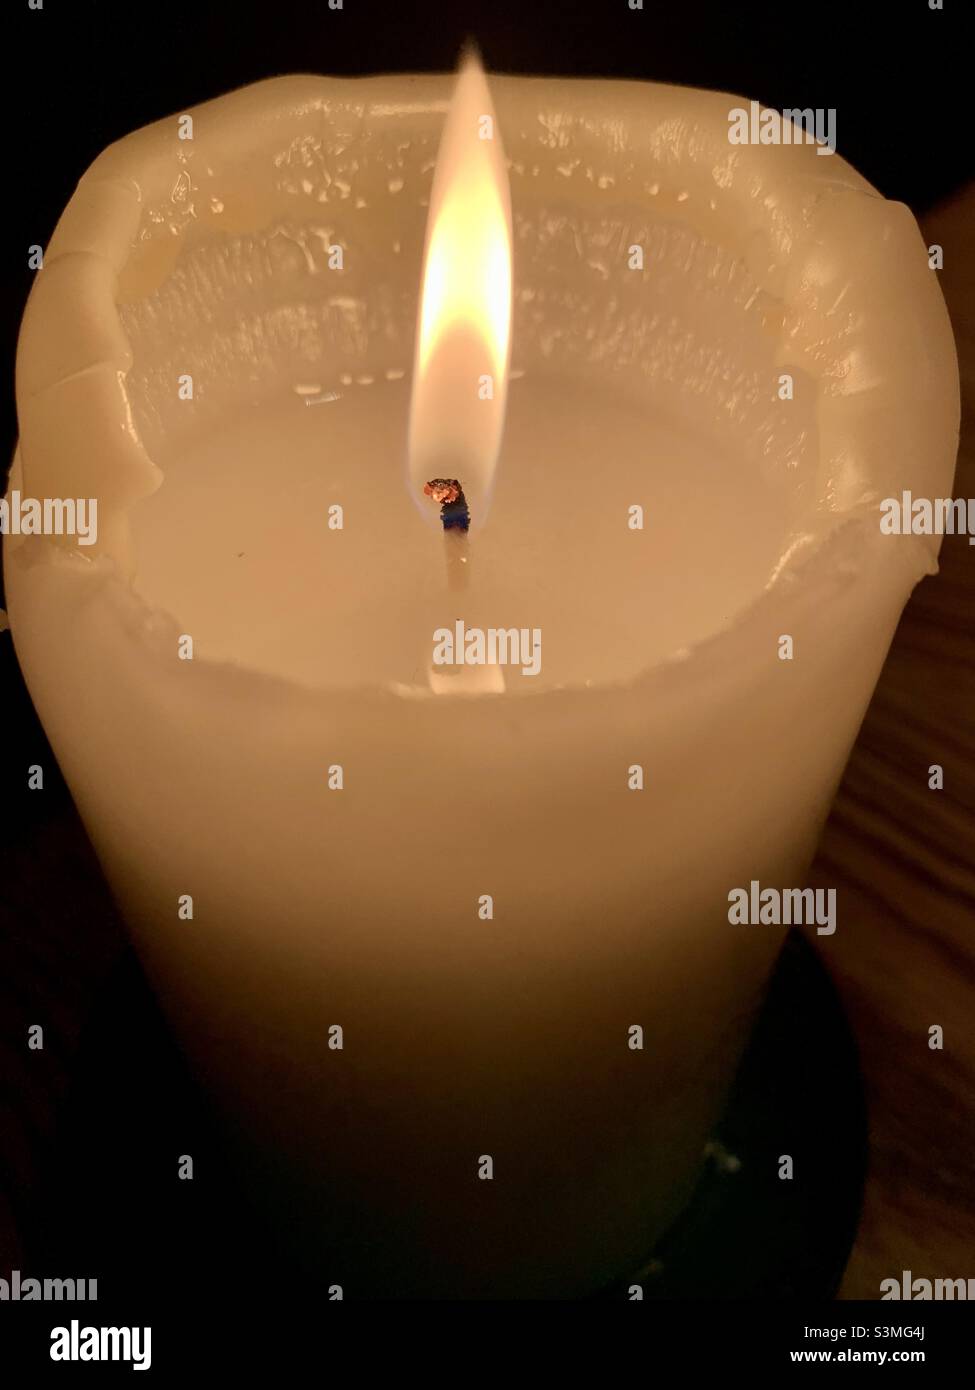 Burning candle flame Stock Photo